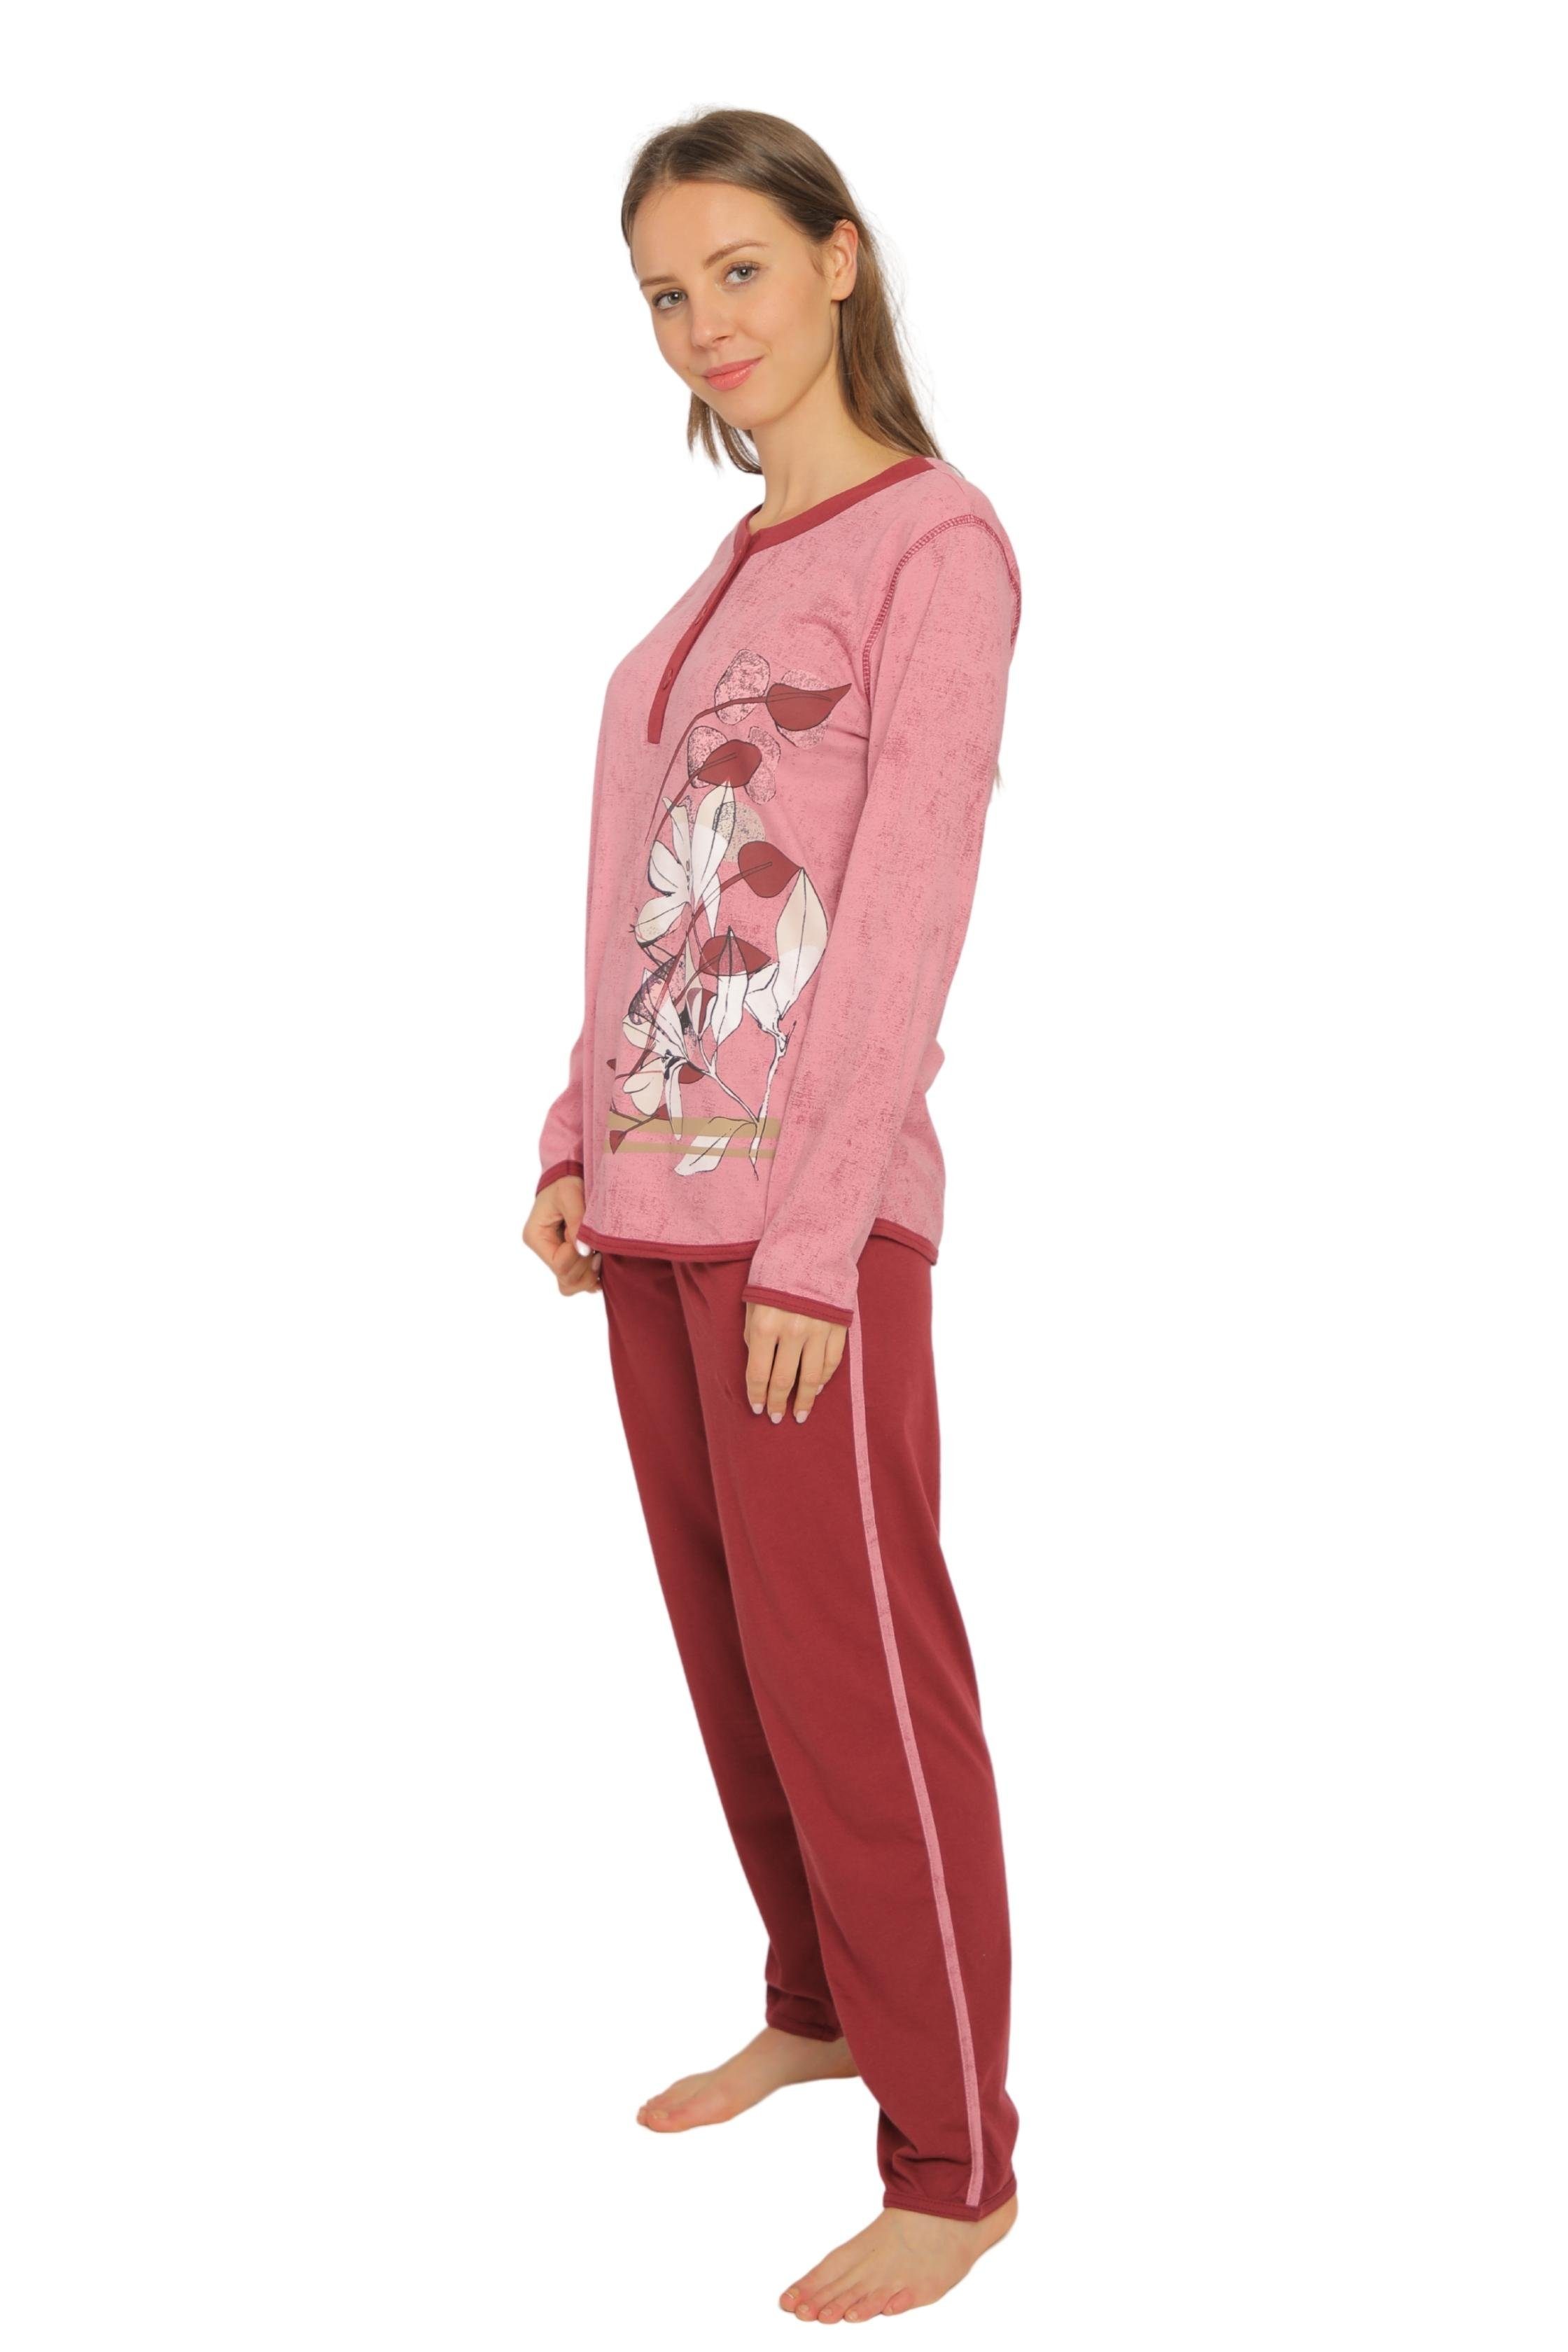 Qualität reiner DF419 Pyjama, (Packung) Homewear Consult-Tex Pyjama aus Damen Baumwolle-Jersey Schlafanzug, Set